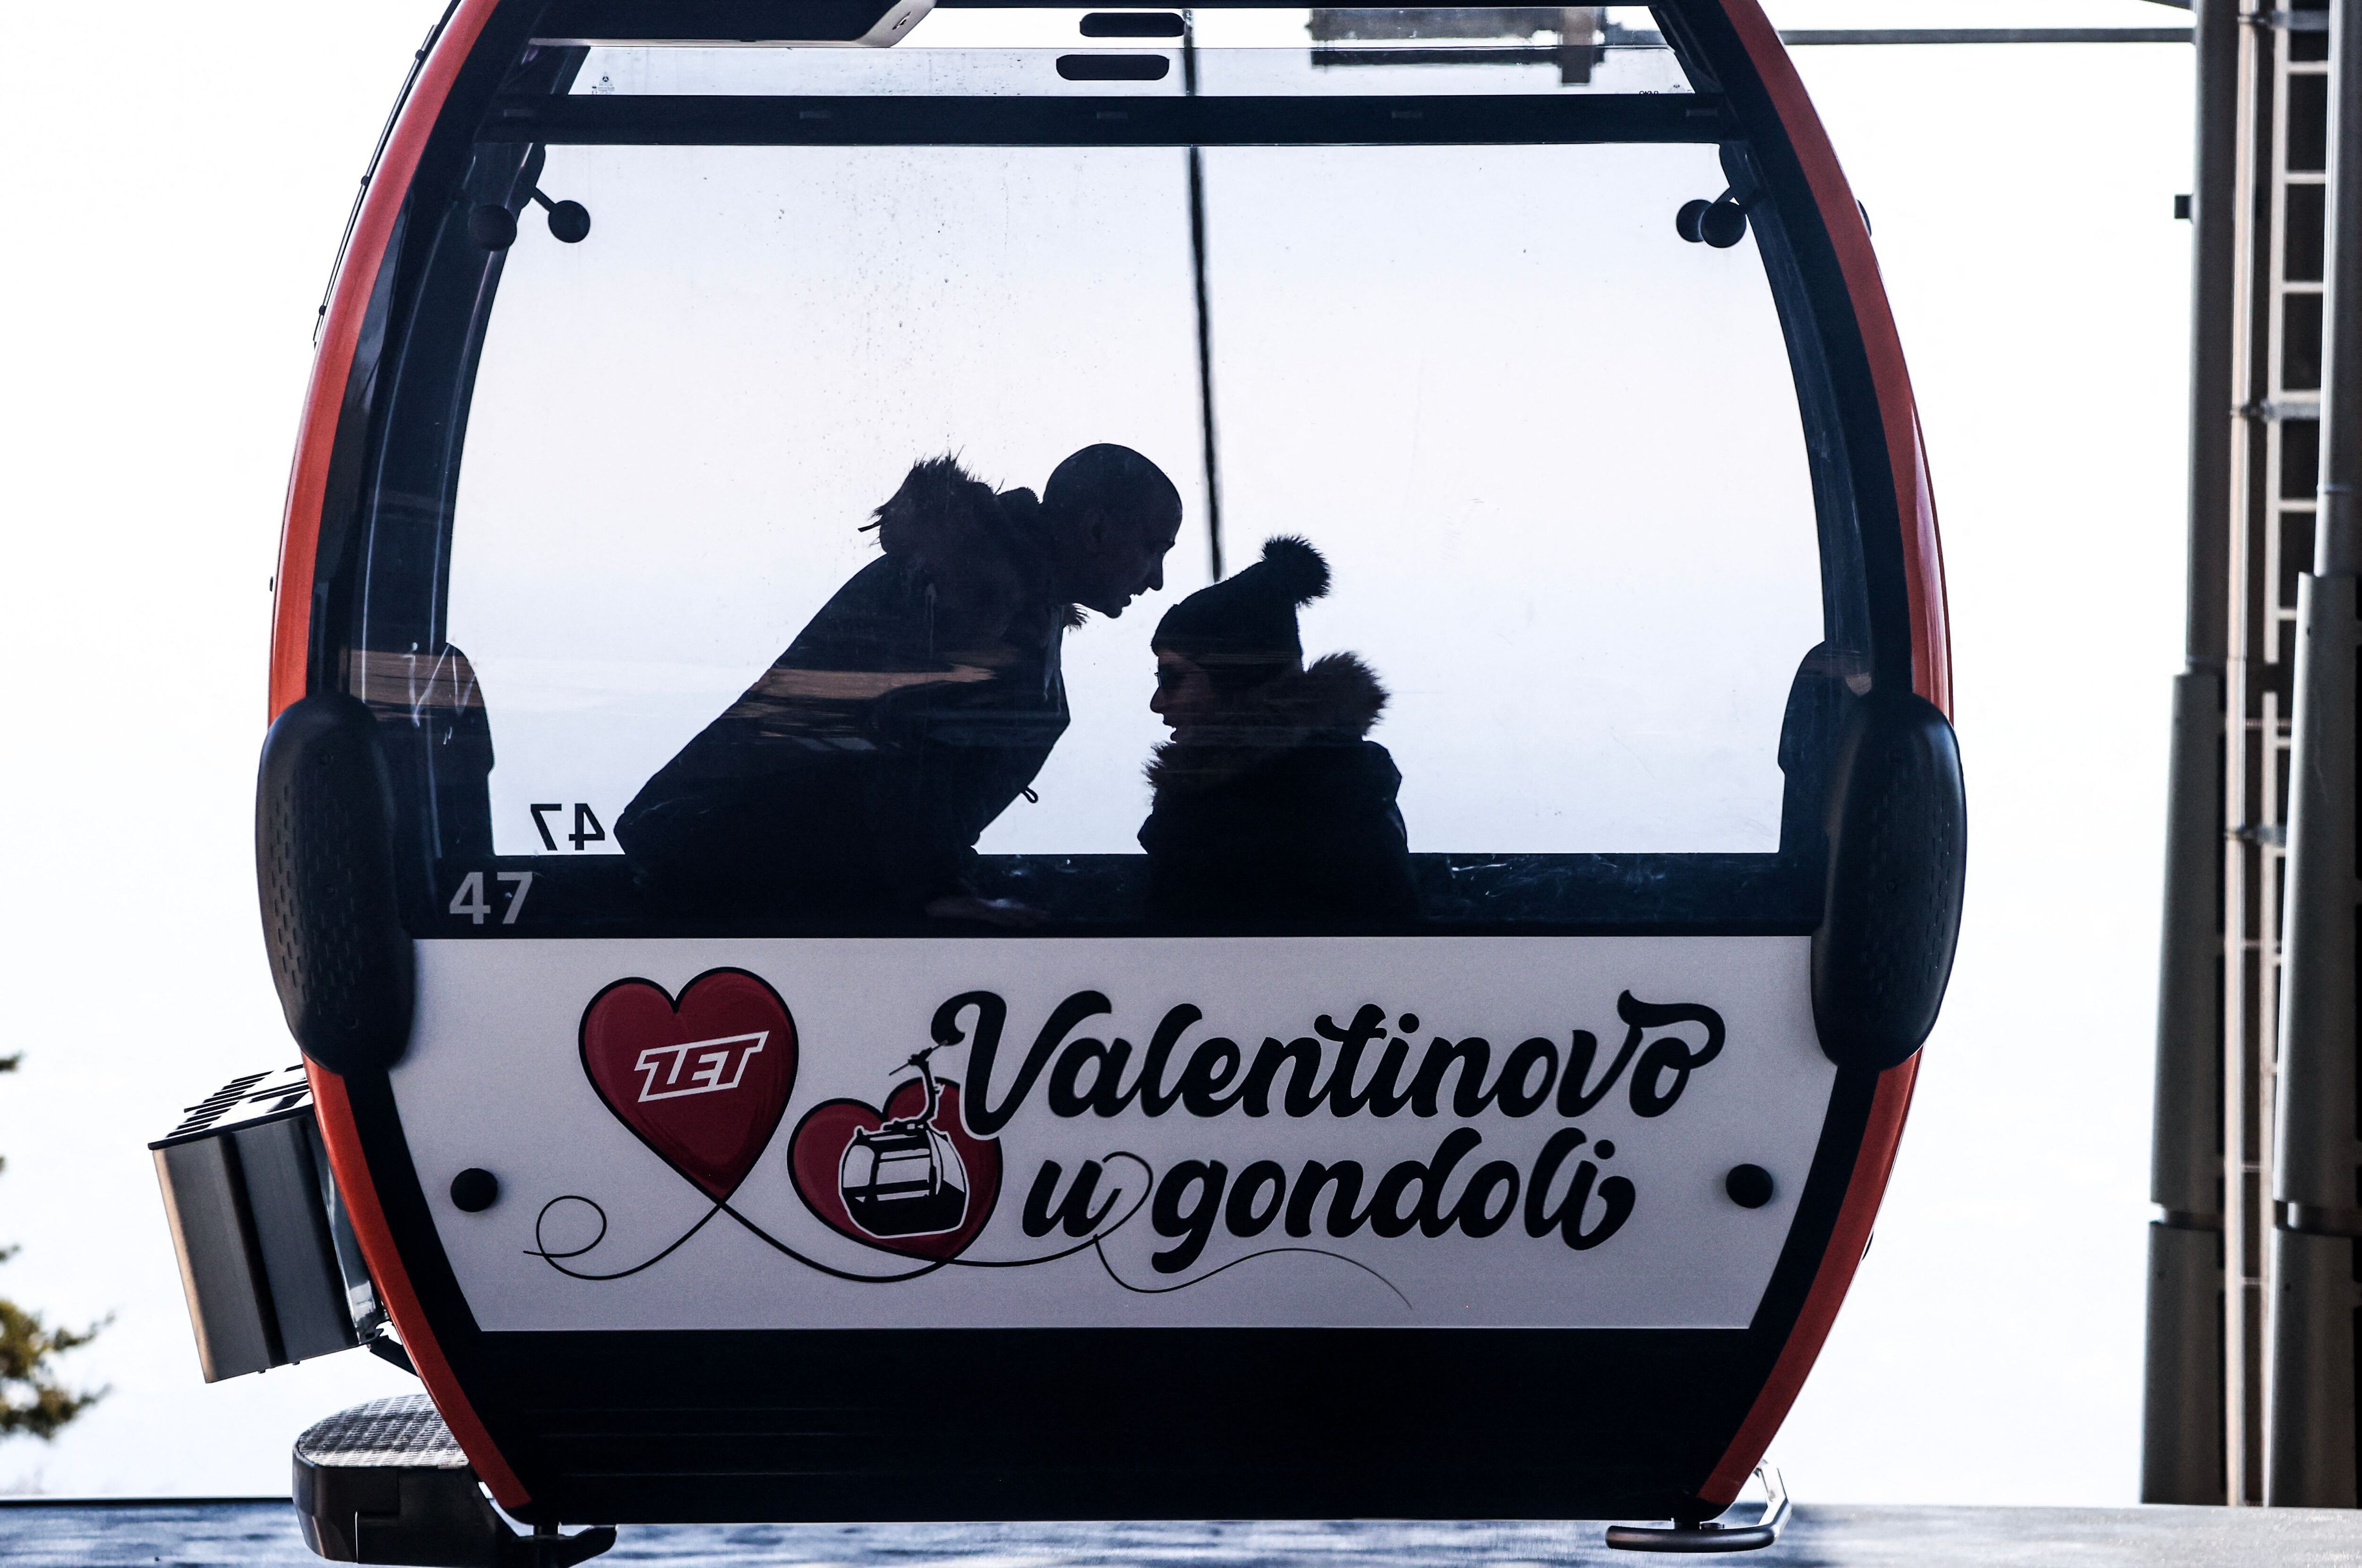 Más allá de los regalos, también se puede celebrar San Valentín viviendo nuevas experiencias, como el paseo en góndola que hizo esta pareja en Zagreb, Croacia.




